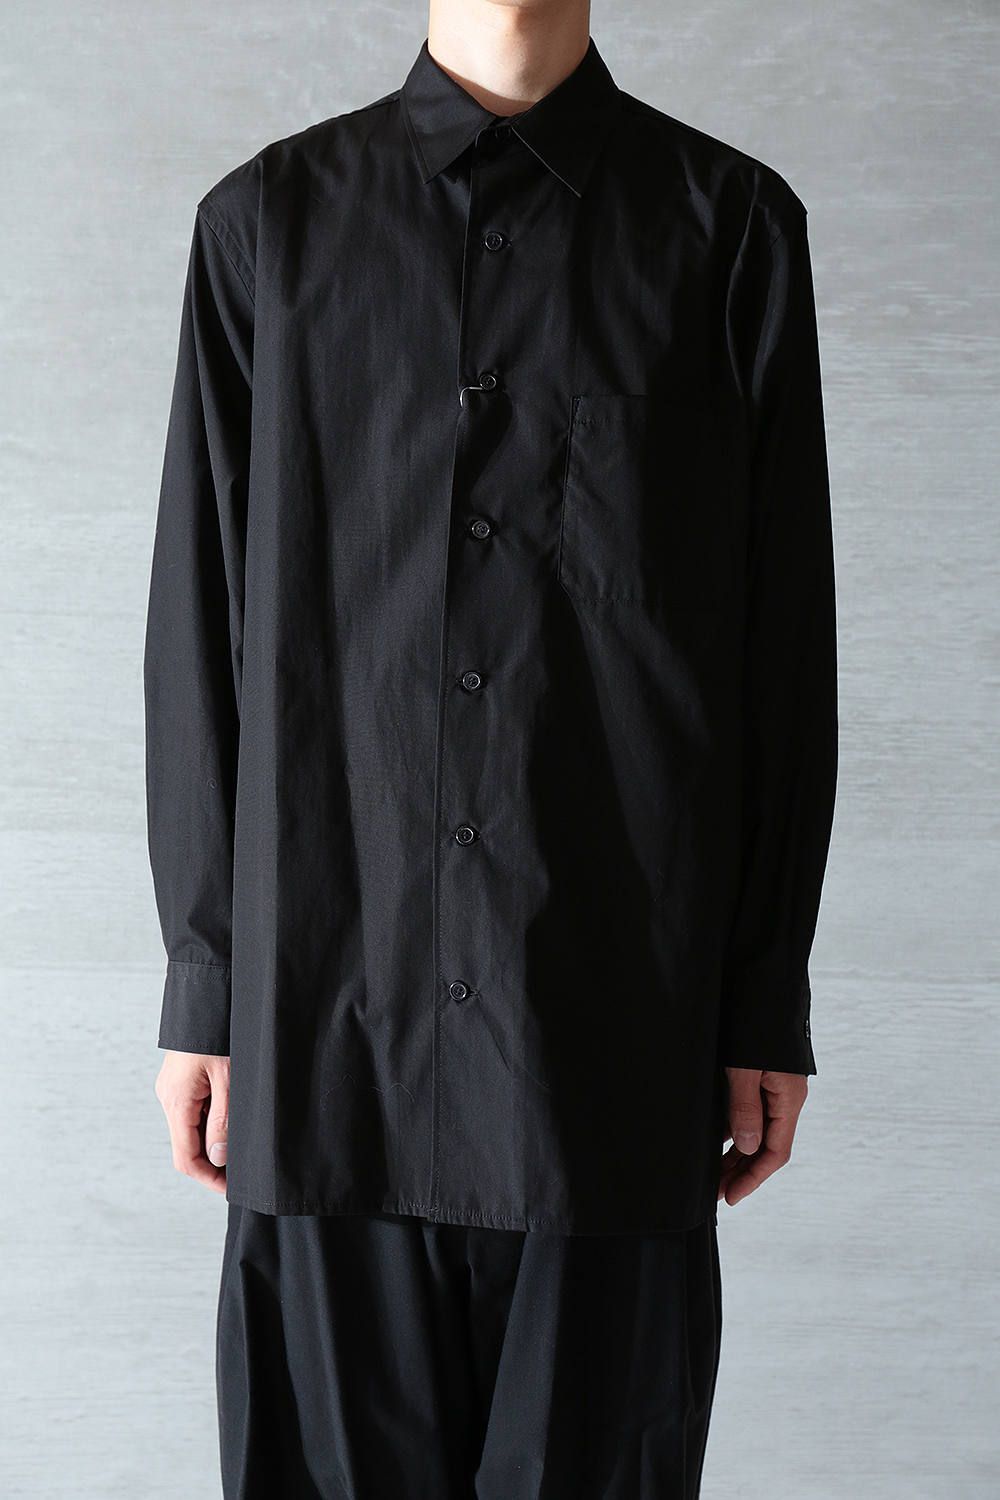 不定期特価 20SS BLACK Scandal Yohji Yamamotoスタッフシャツ シャツ